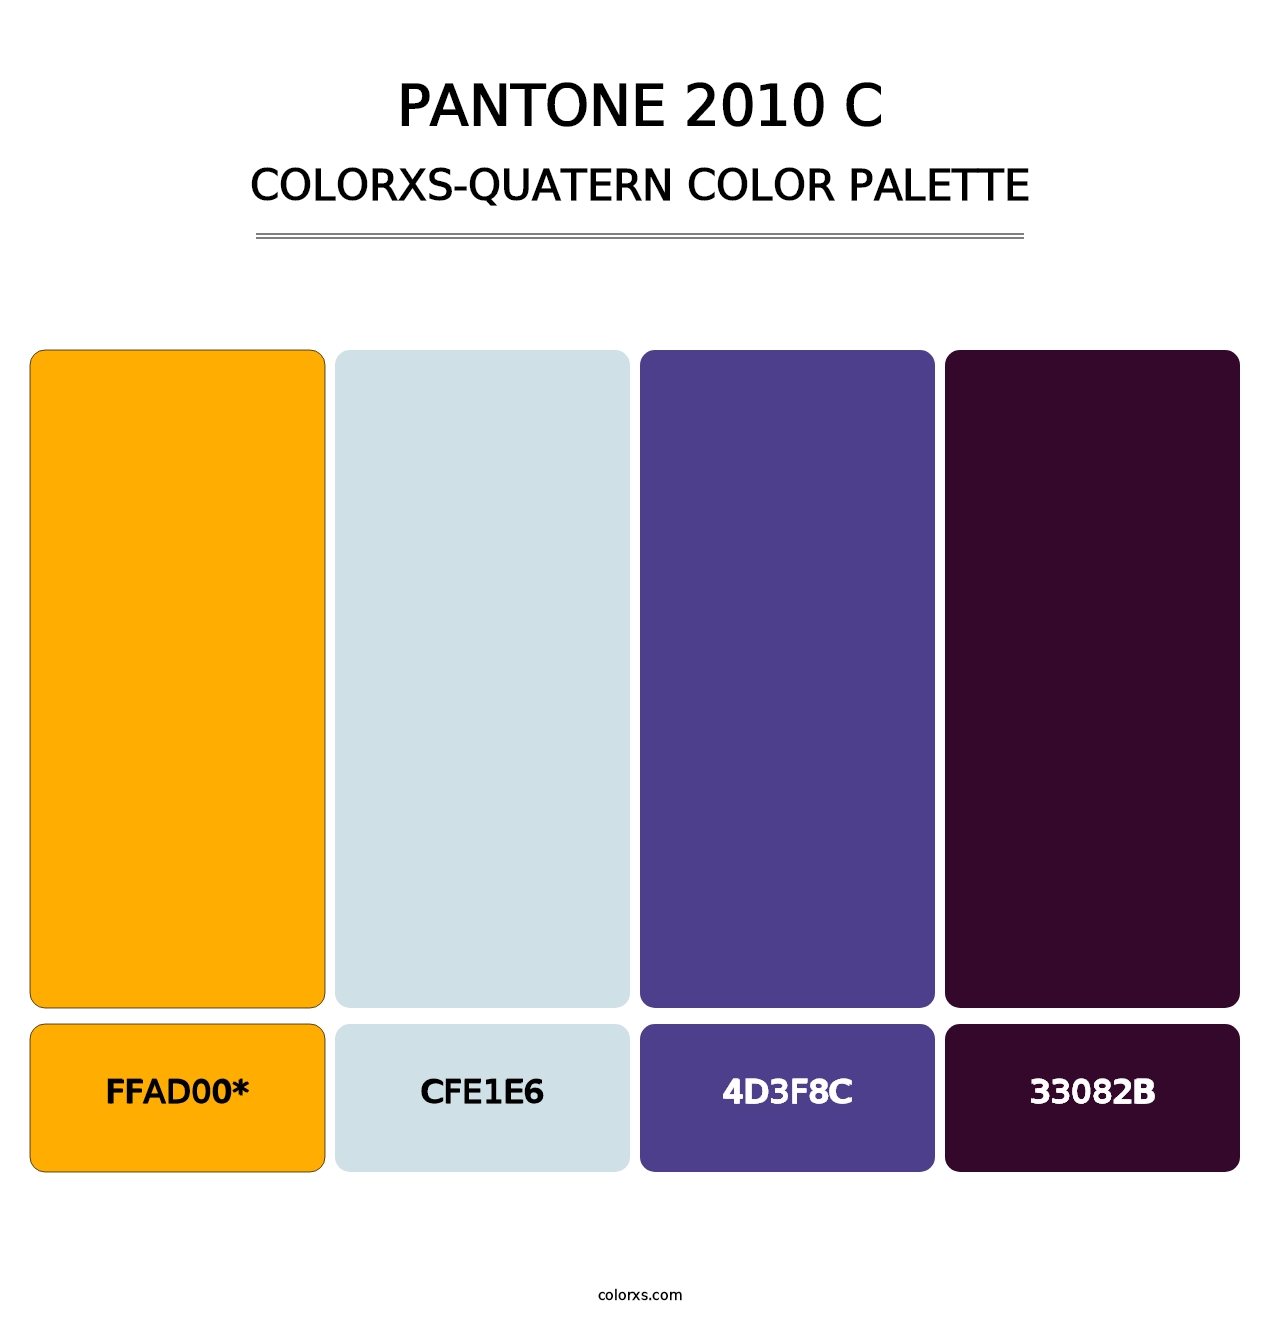 PANTONE 2010 C - Colorxs Quad Palette